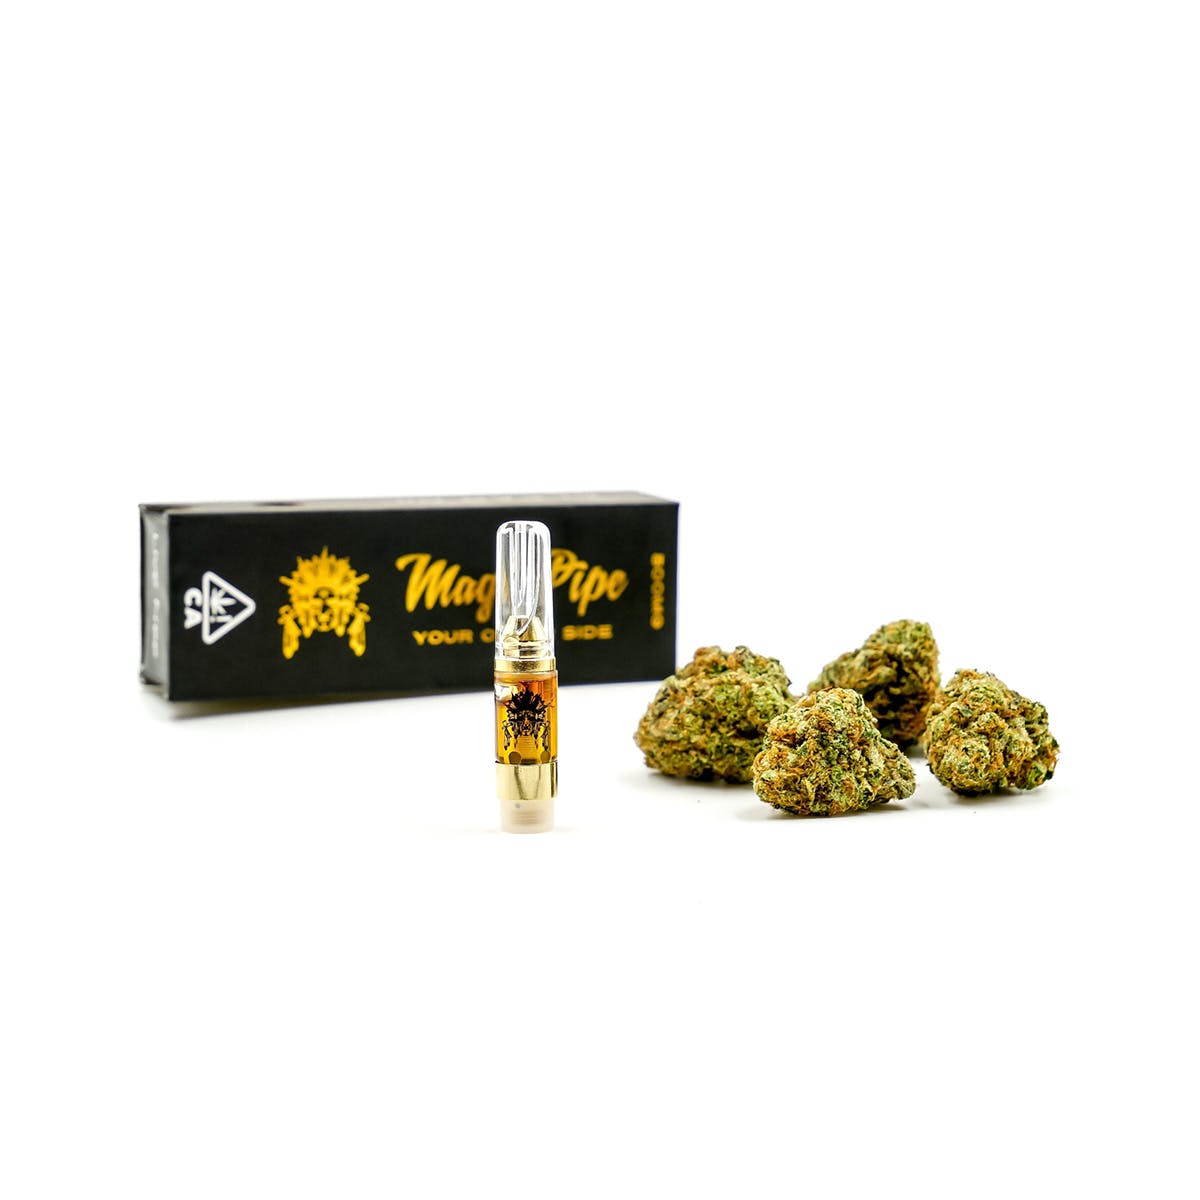 marijuana-dispensaries-kings-pre-ico-in-burbank-gelato-premium-cartridge